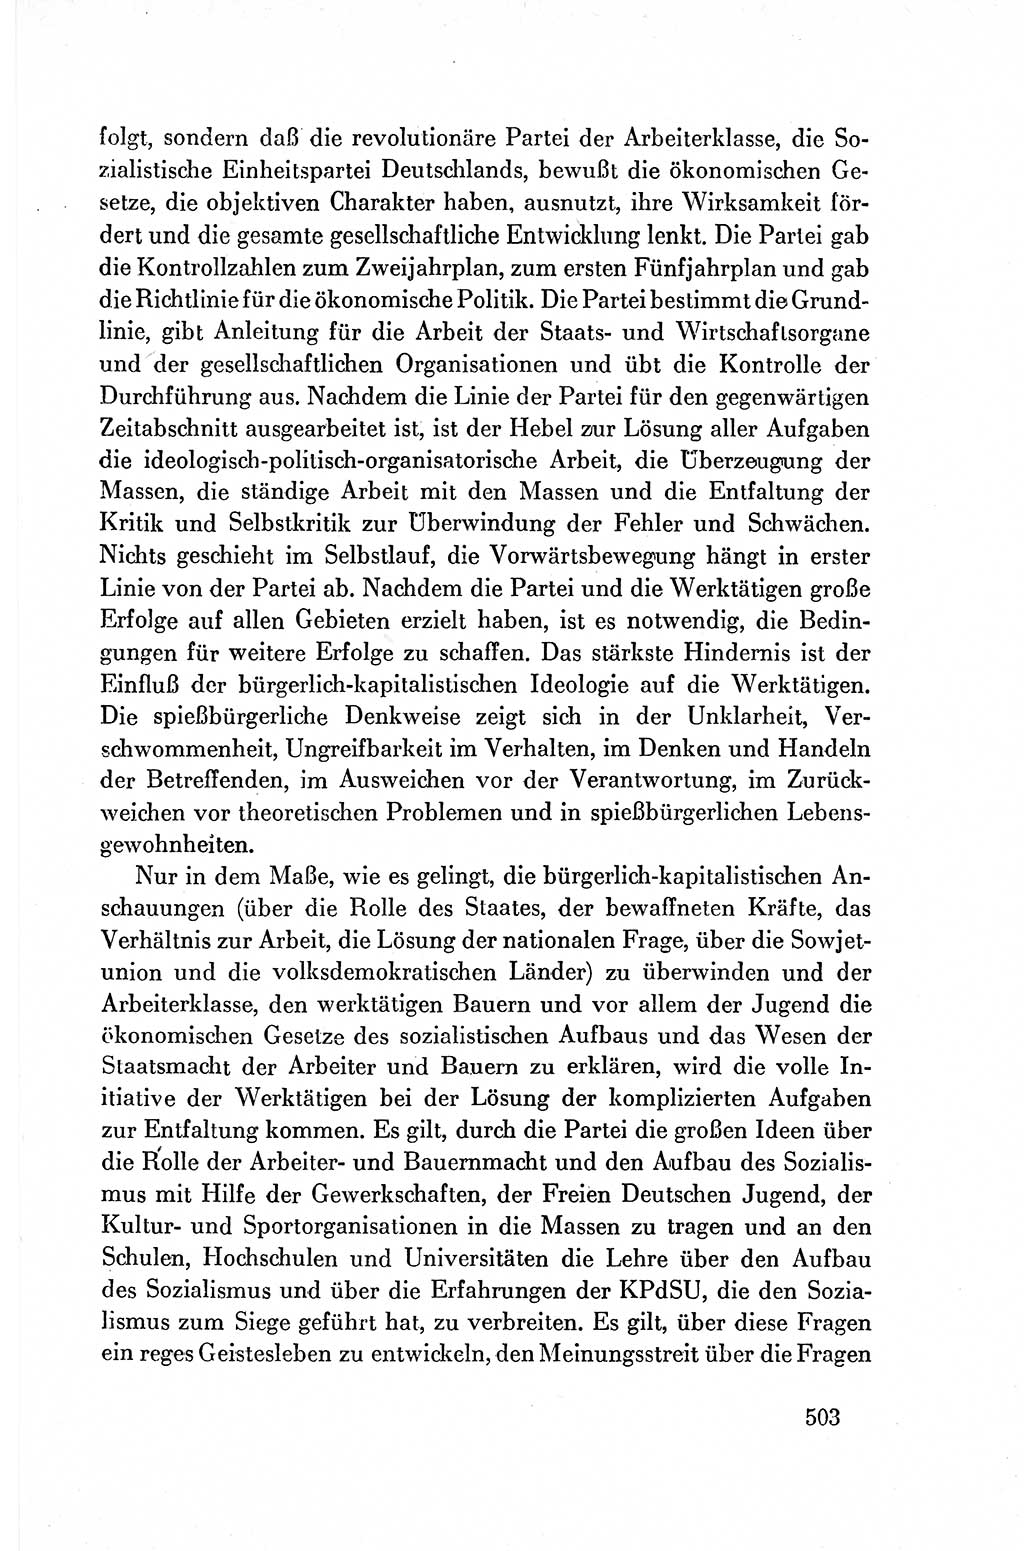 Dokumente der Sozialistischen Einheitspartei Deutschlands (SED) [Deutsche Demokratische Republik (DDR)] 1954-1955, Seite 503 (Dok. SED DDR 1954-1955, S. 503)